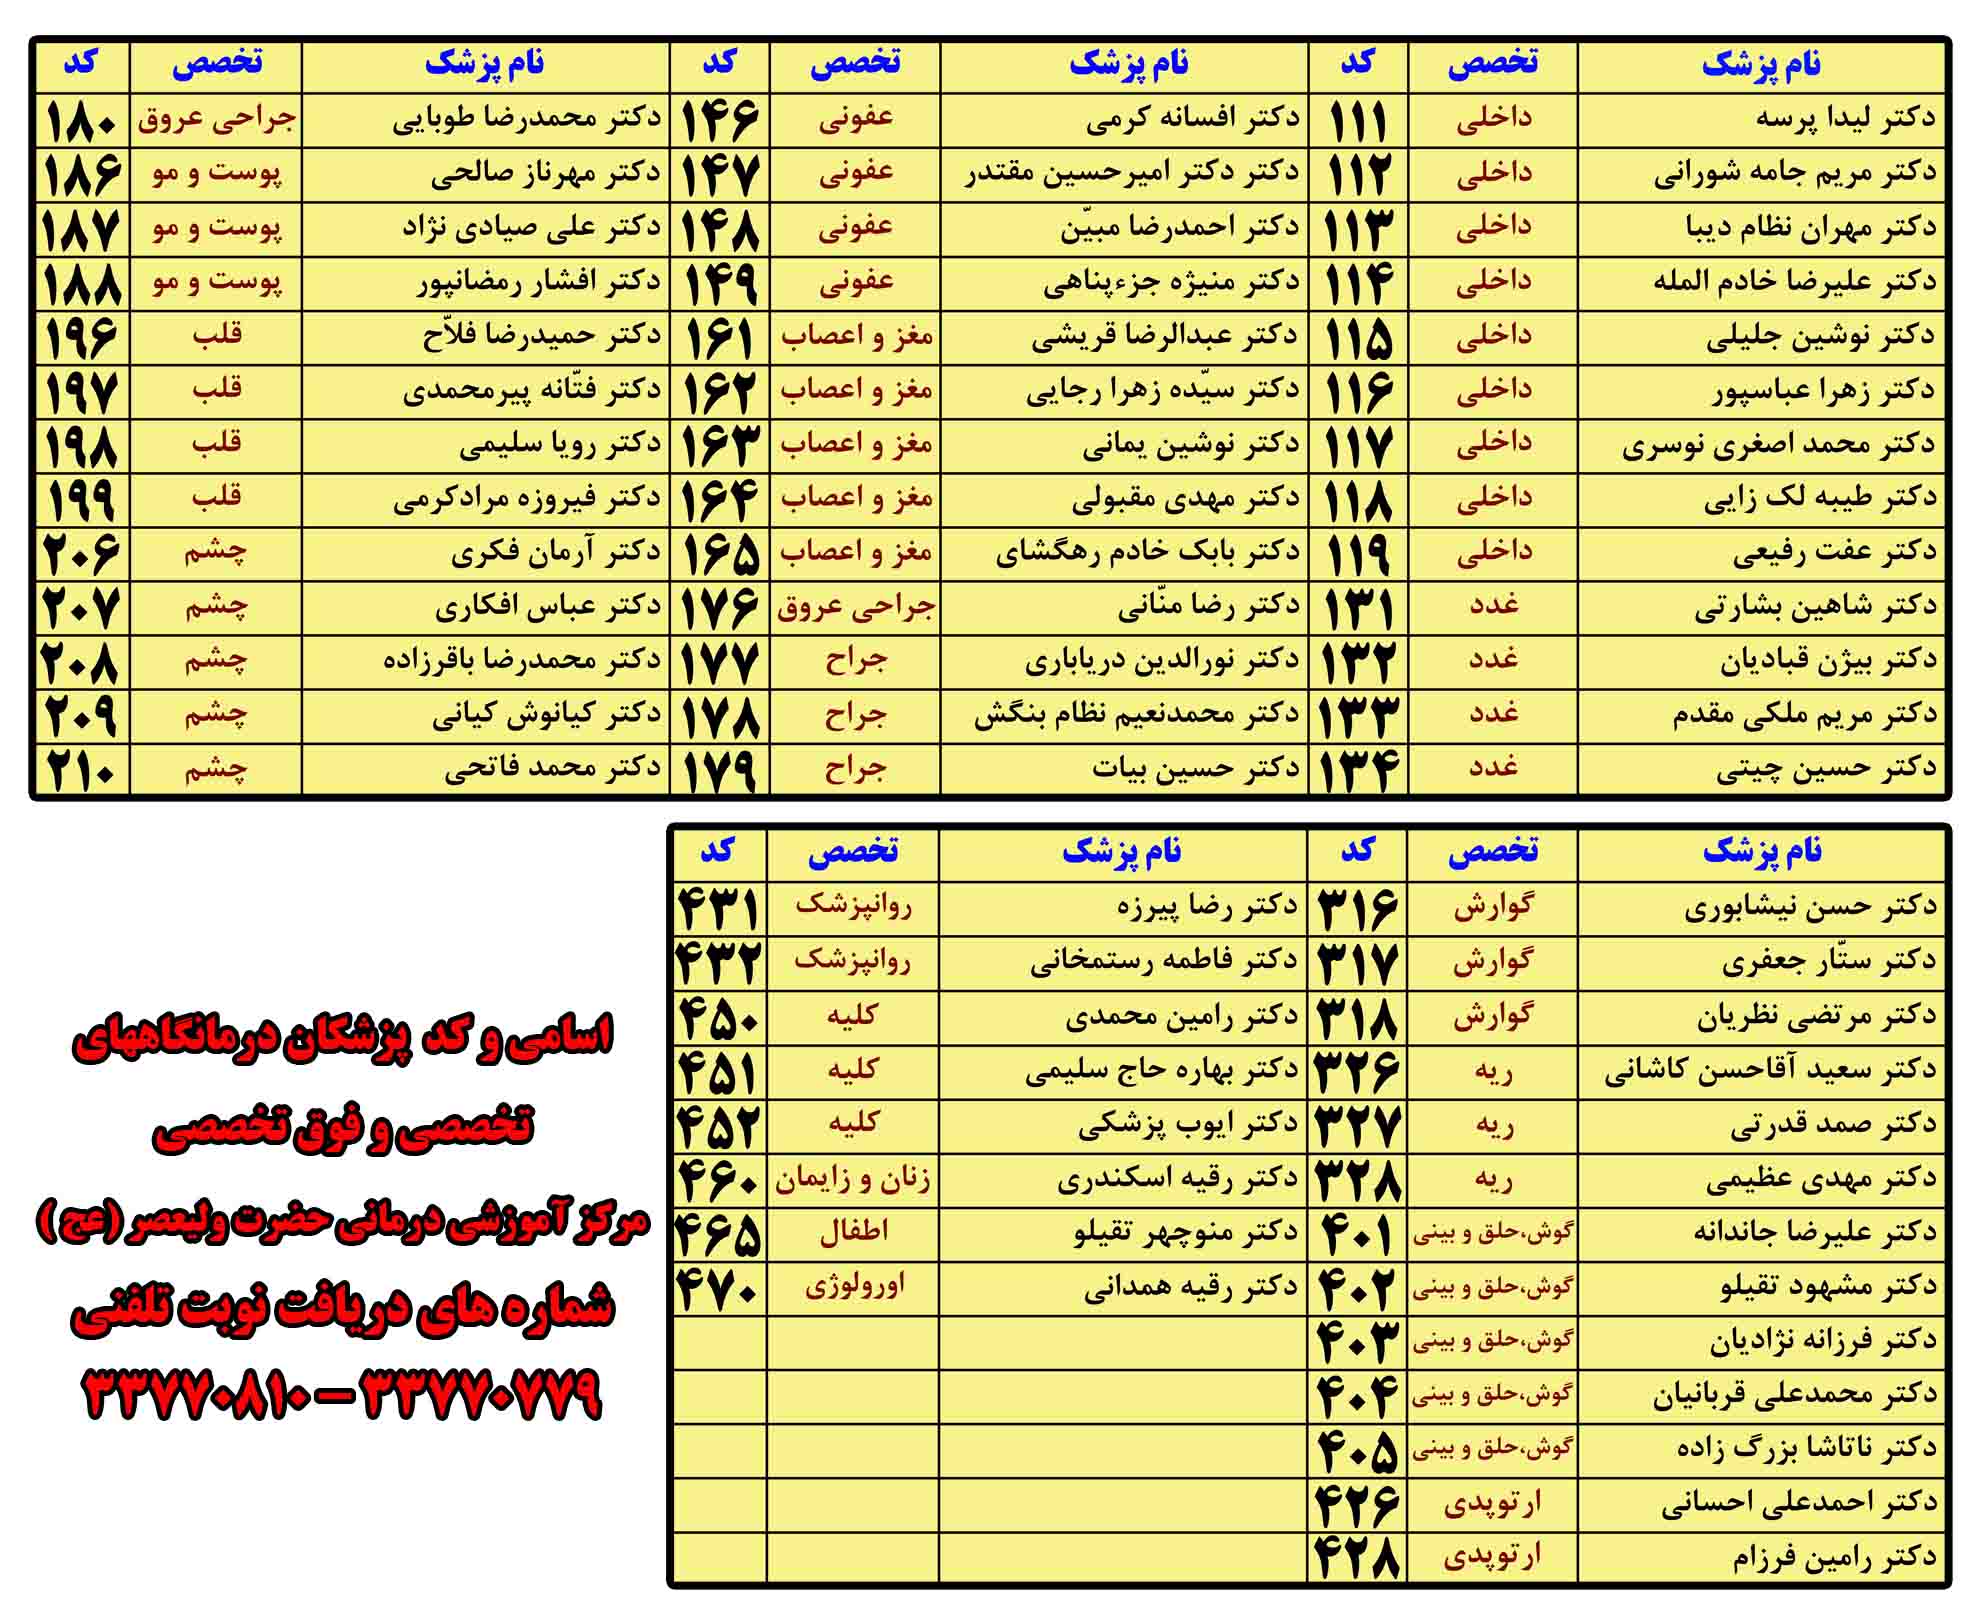 لیست پزشکان استان زنجان
